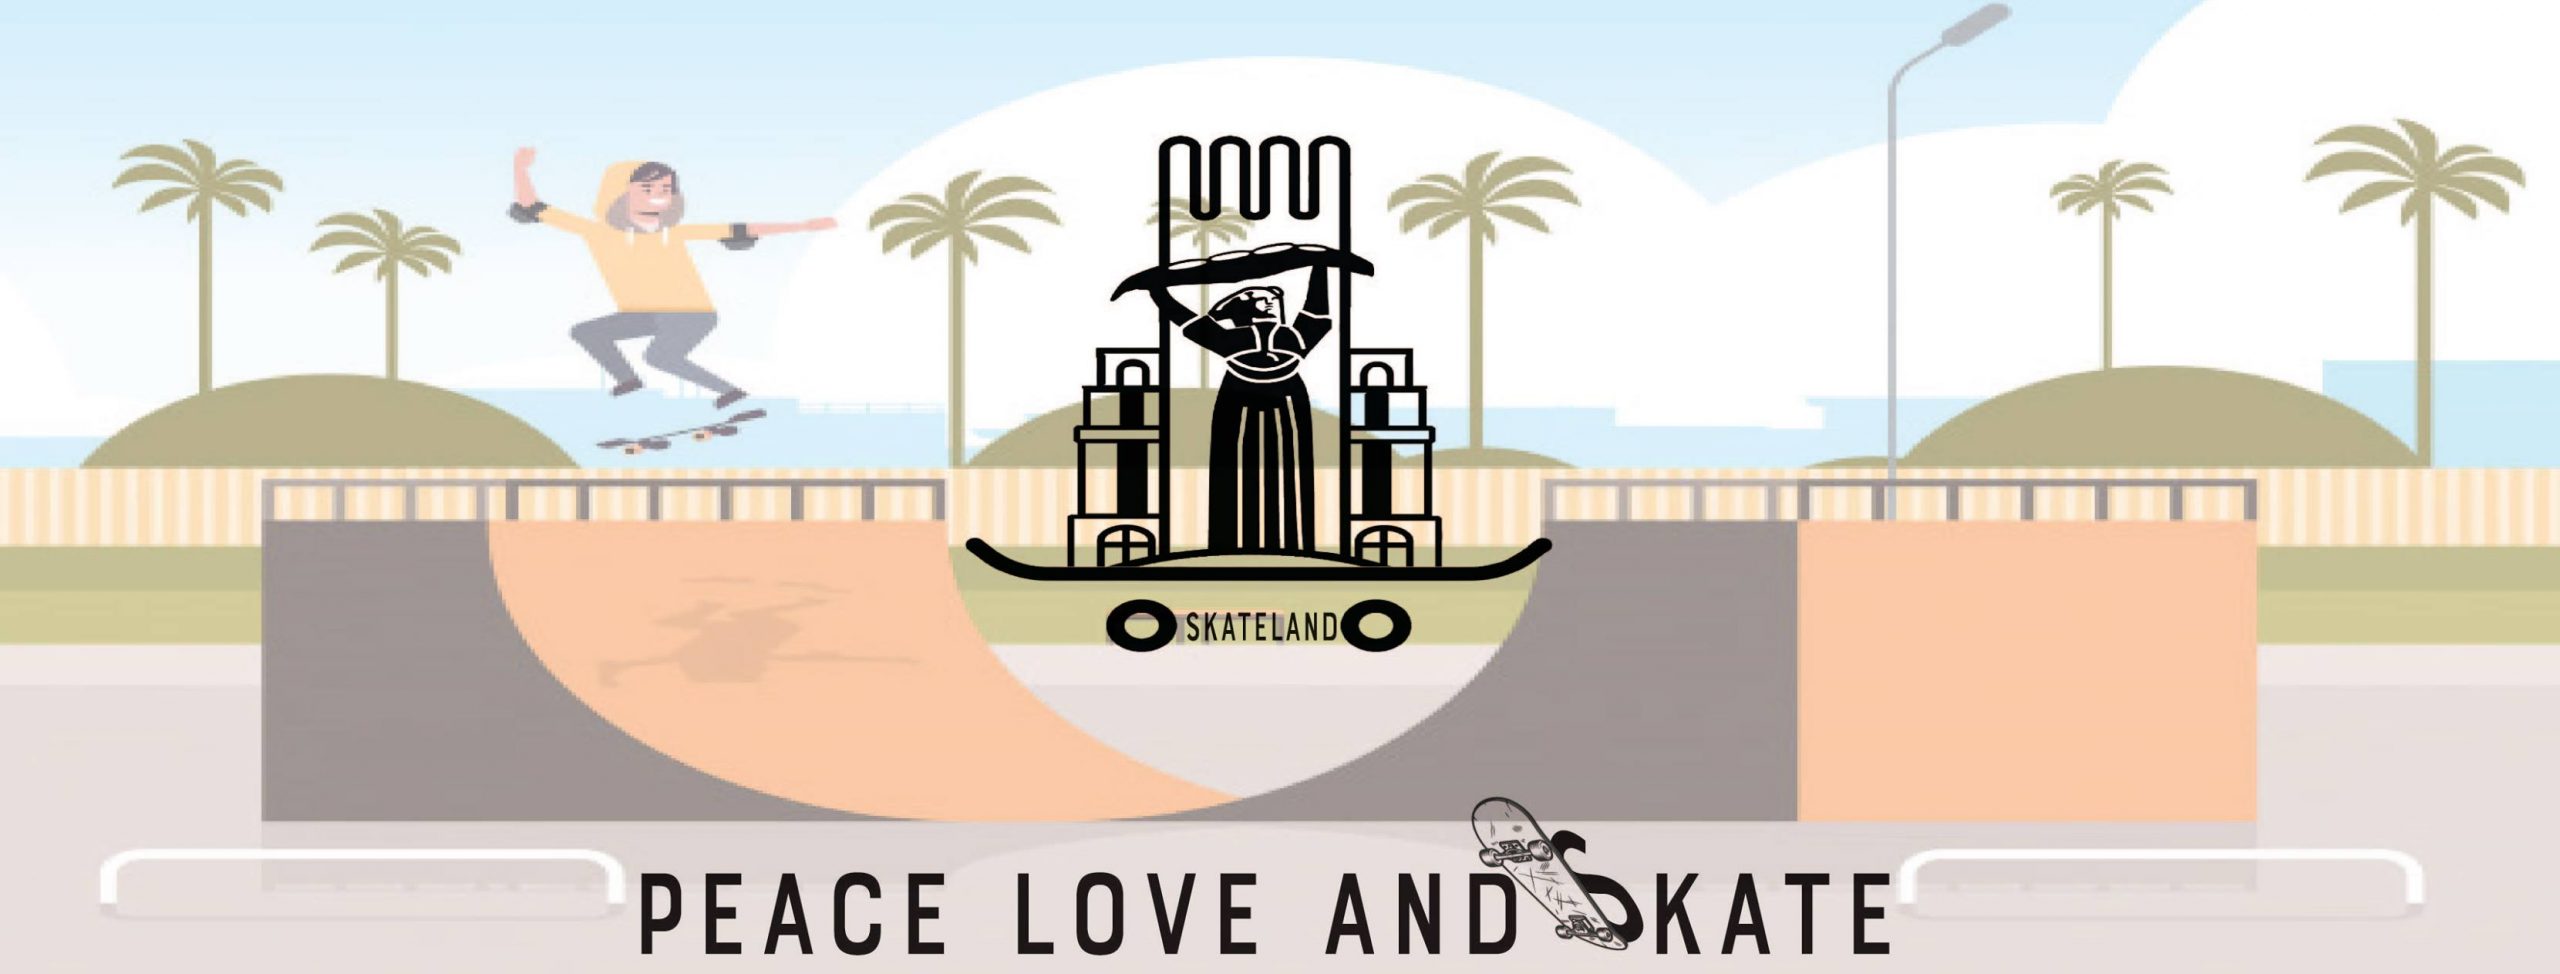 Presentation: Skateland